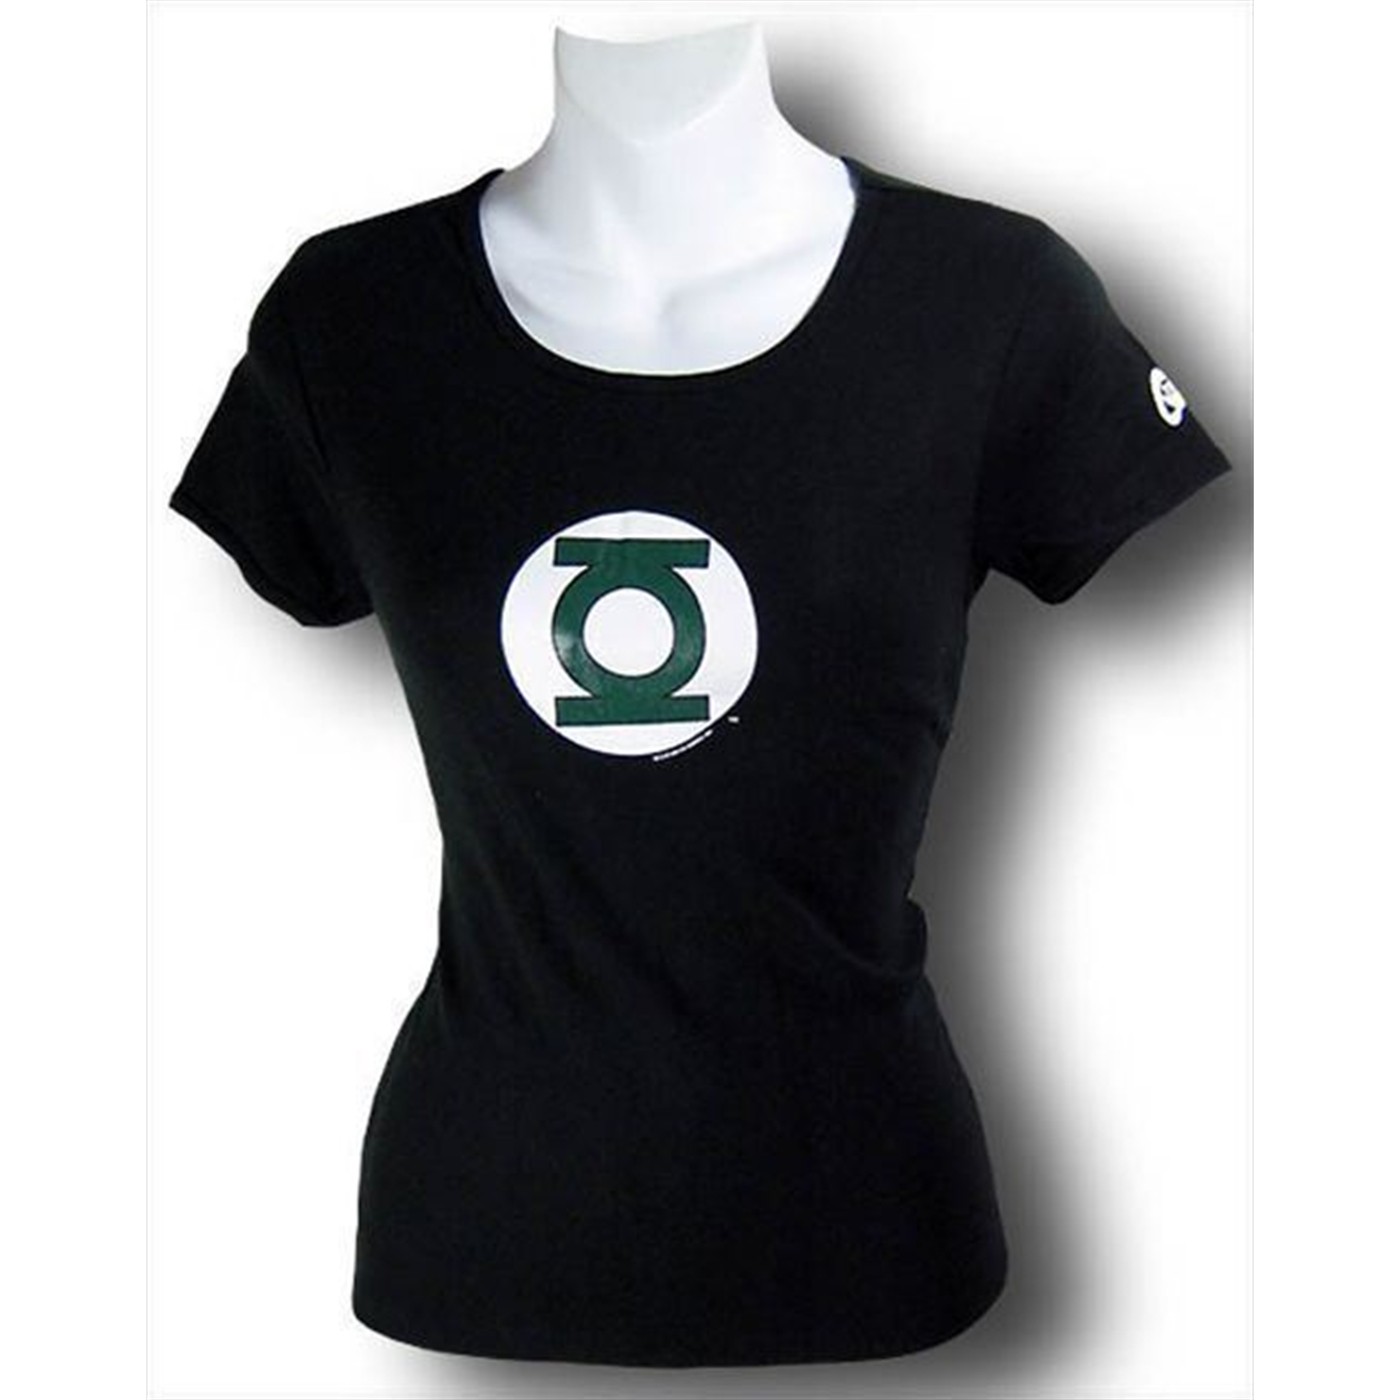 Green Lantern Juniors T-Shirt